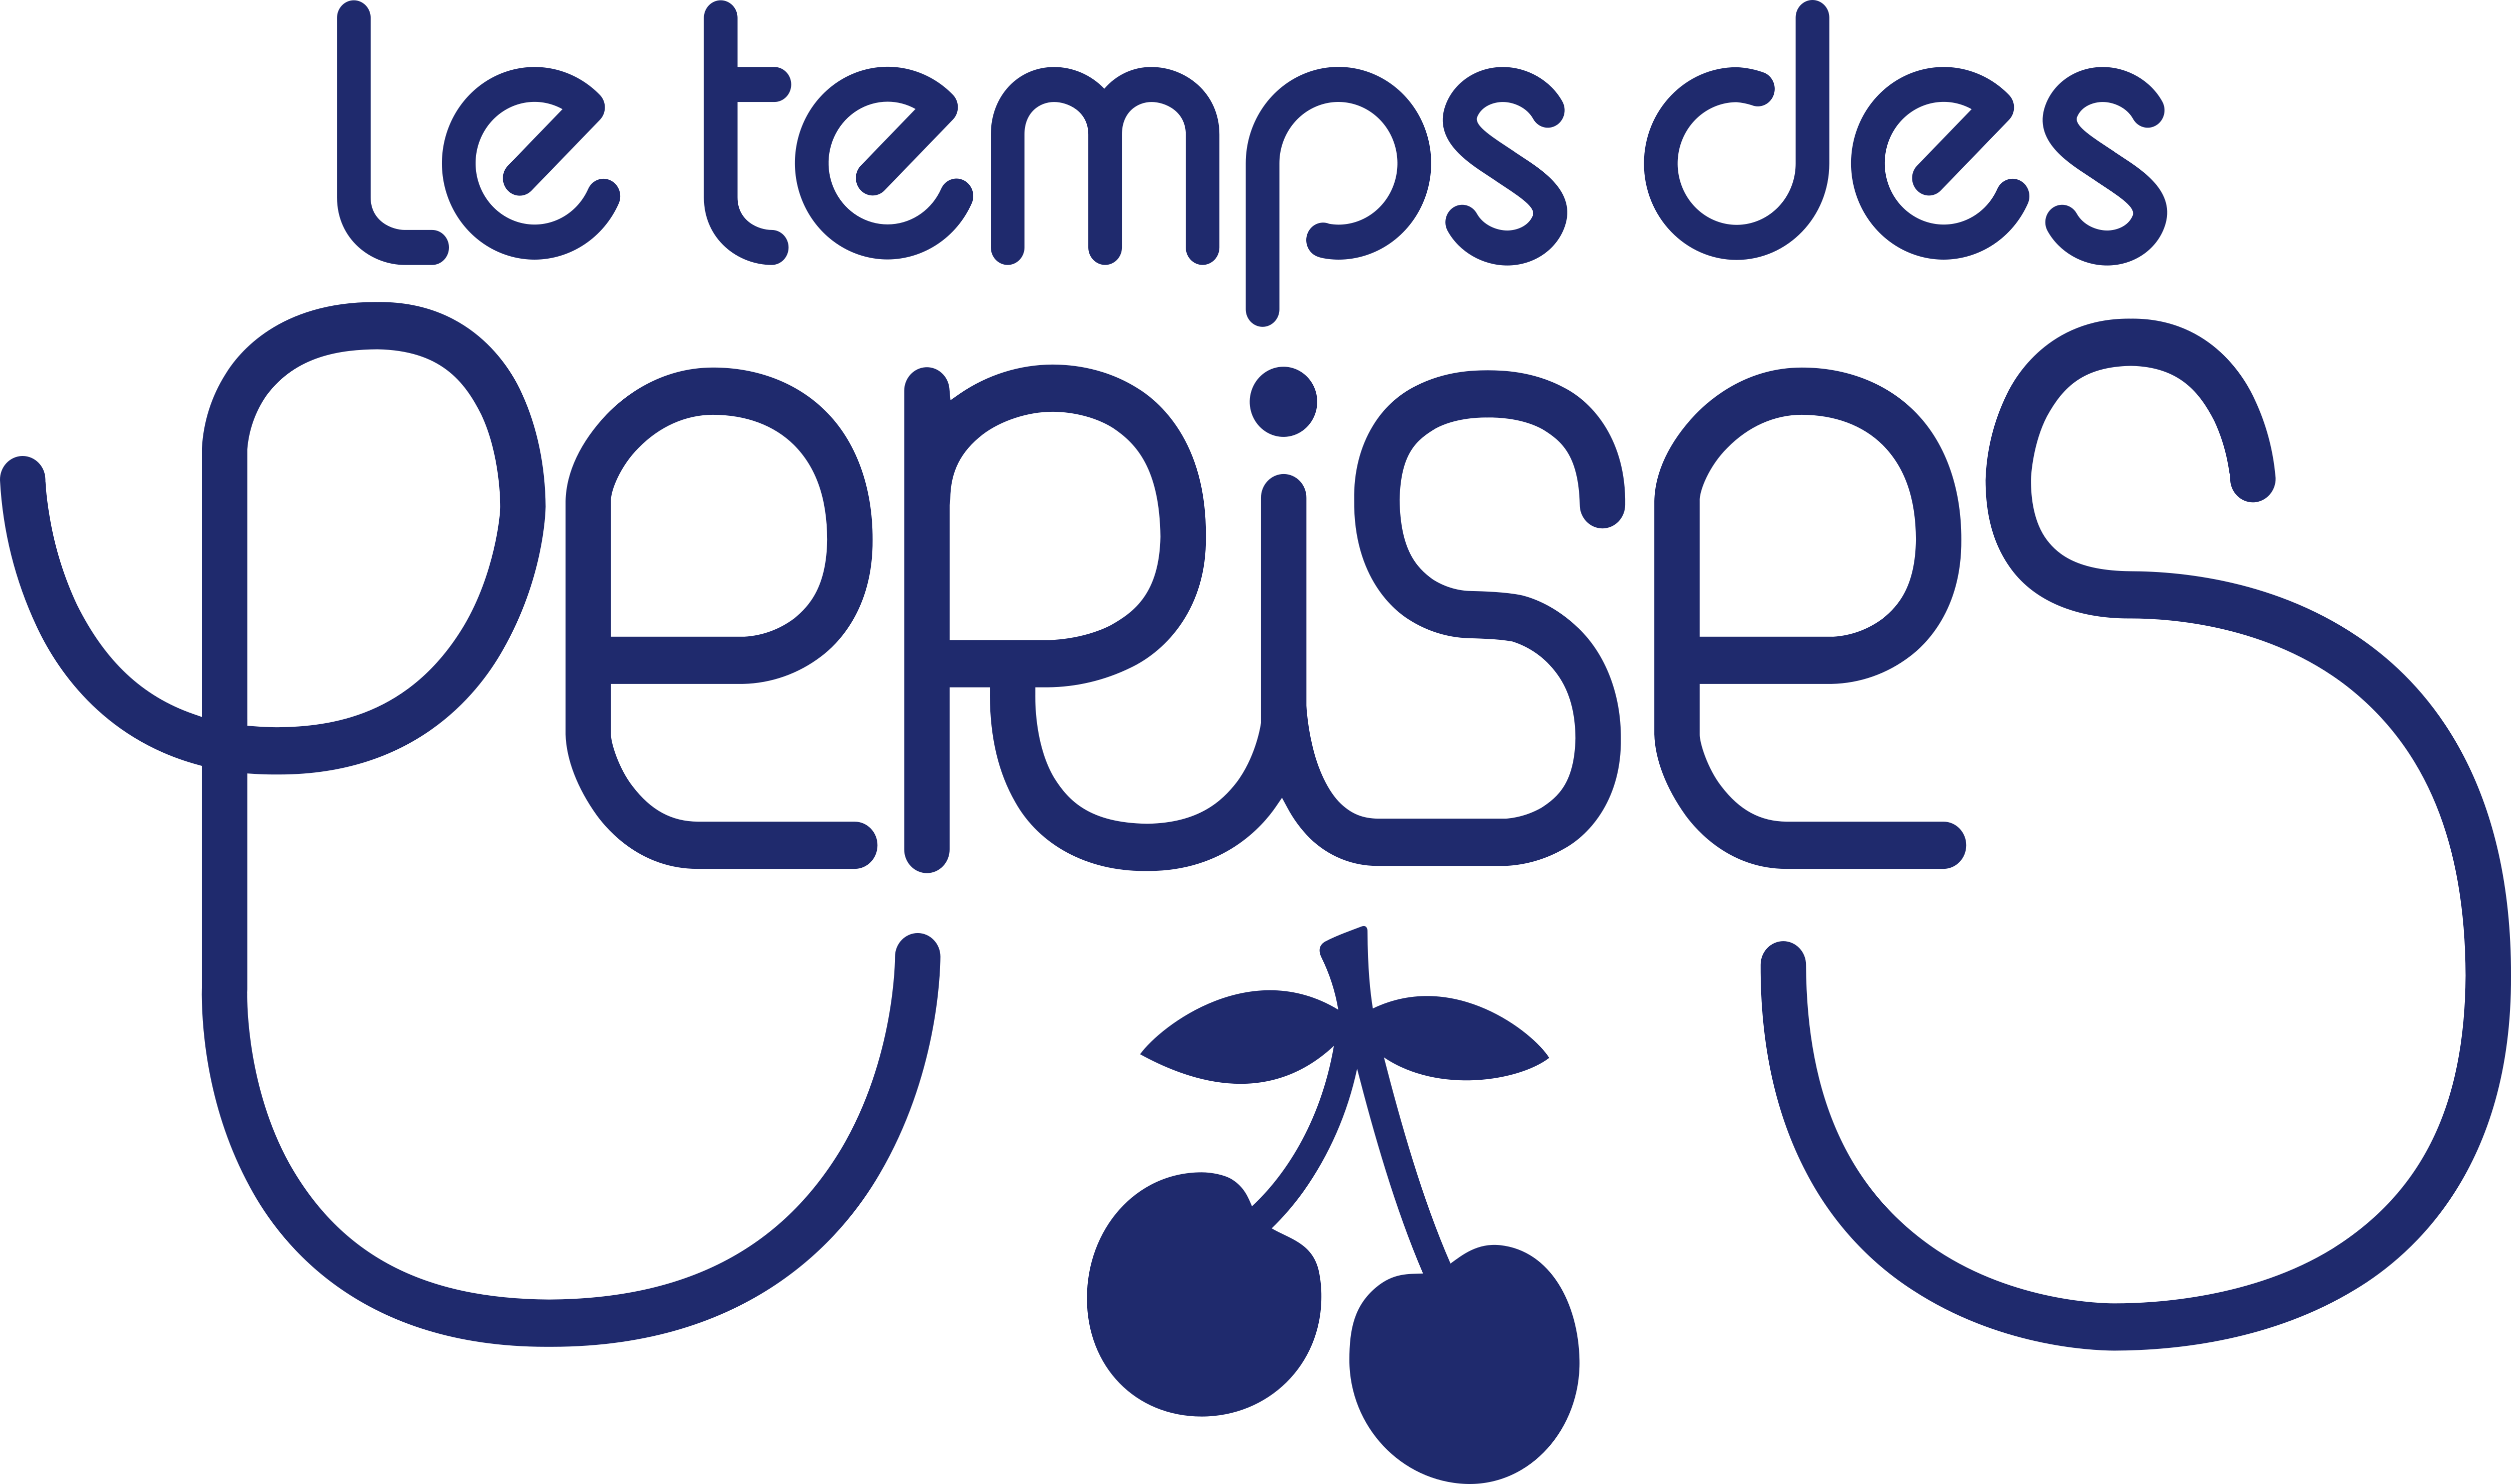 Le Temps des Perises одежда. Le Temps логотип. Le Temps des Cerises сумка. Le Temps Cerises кофе. Tout temps